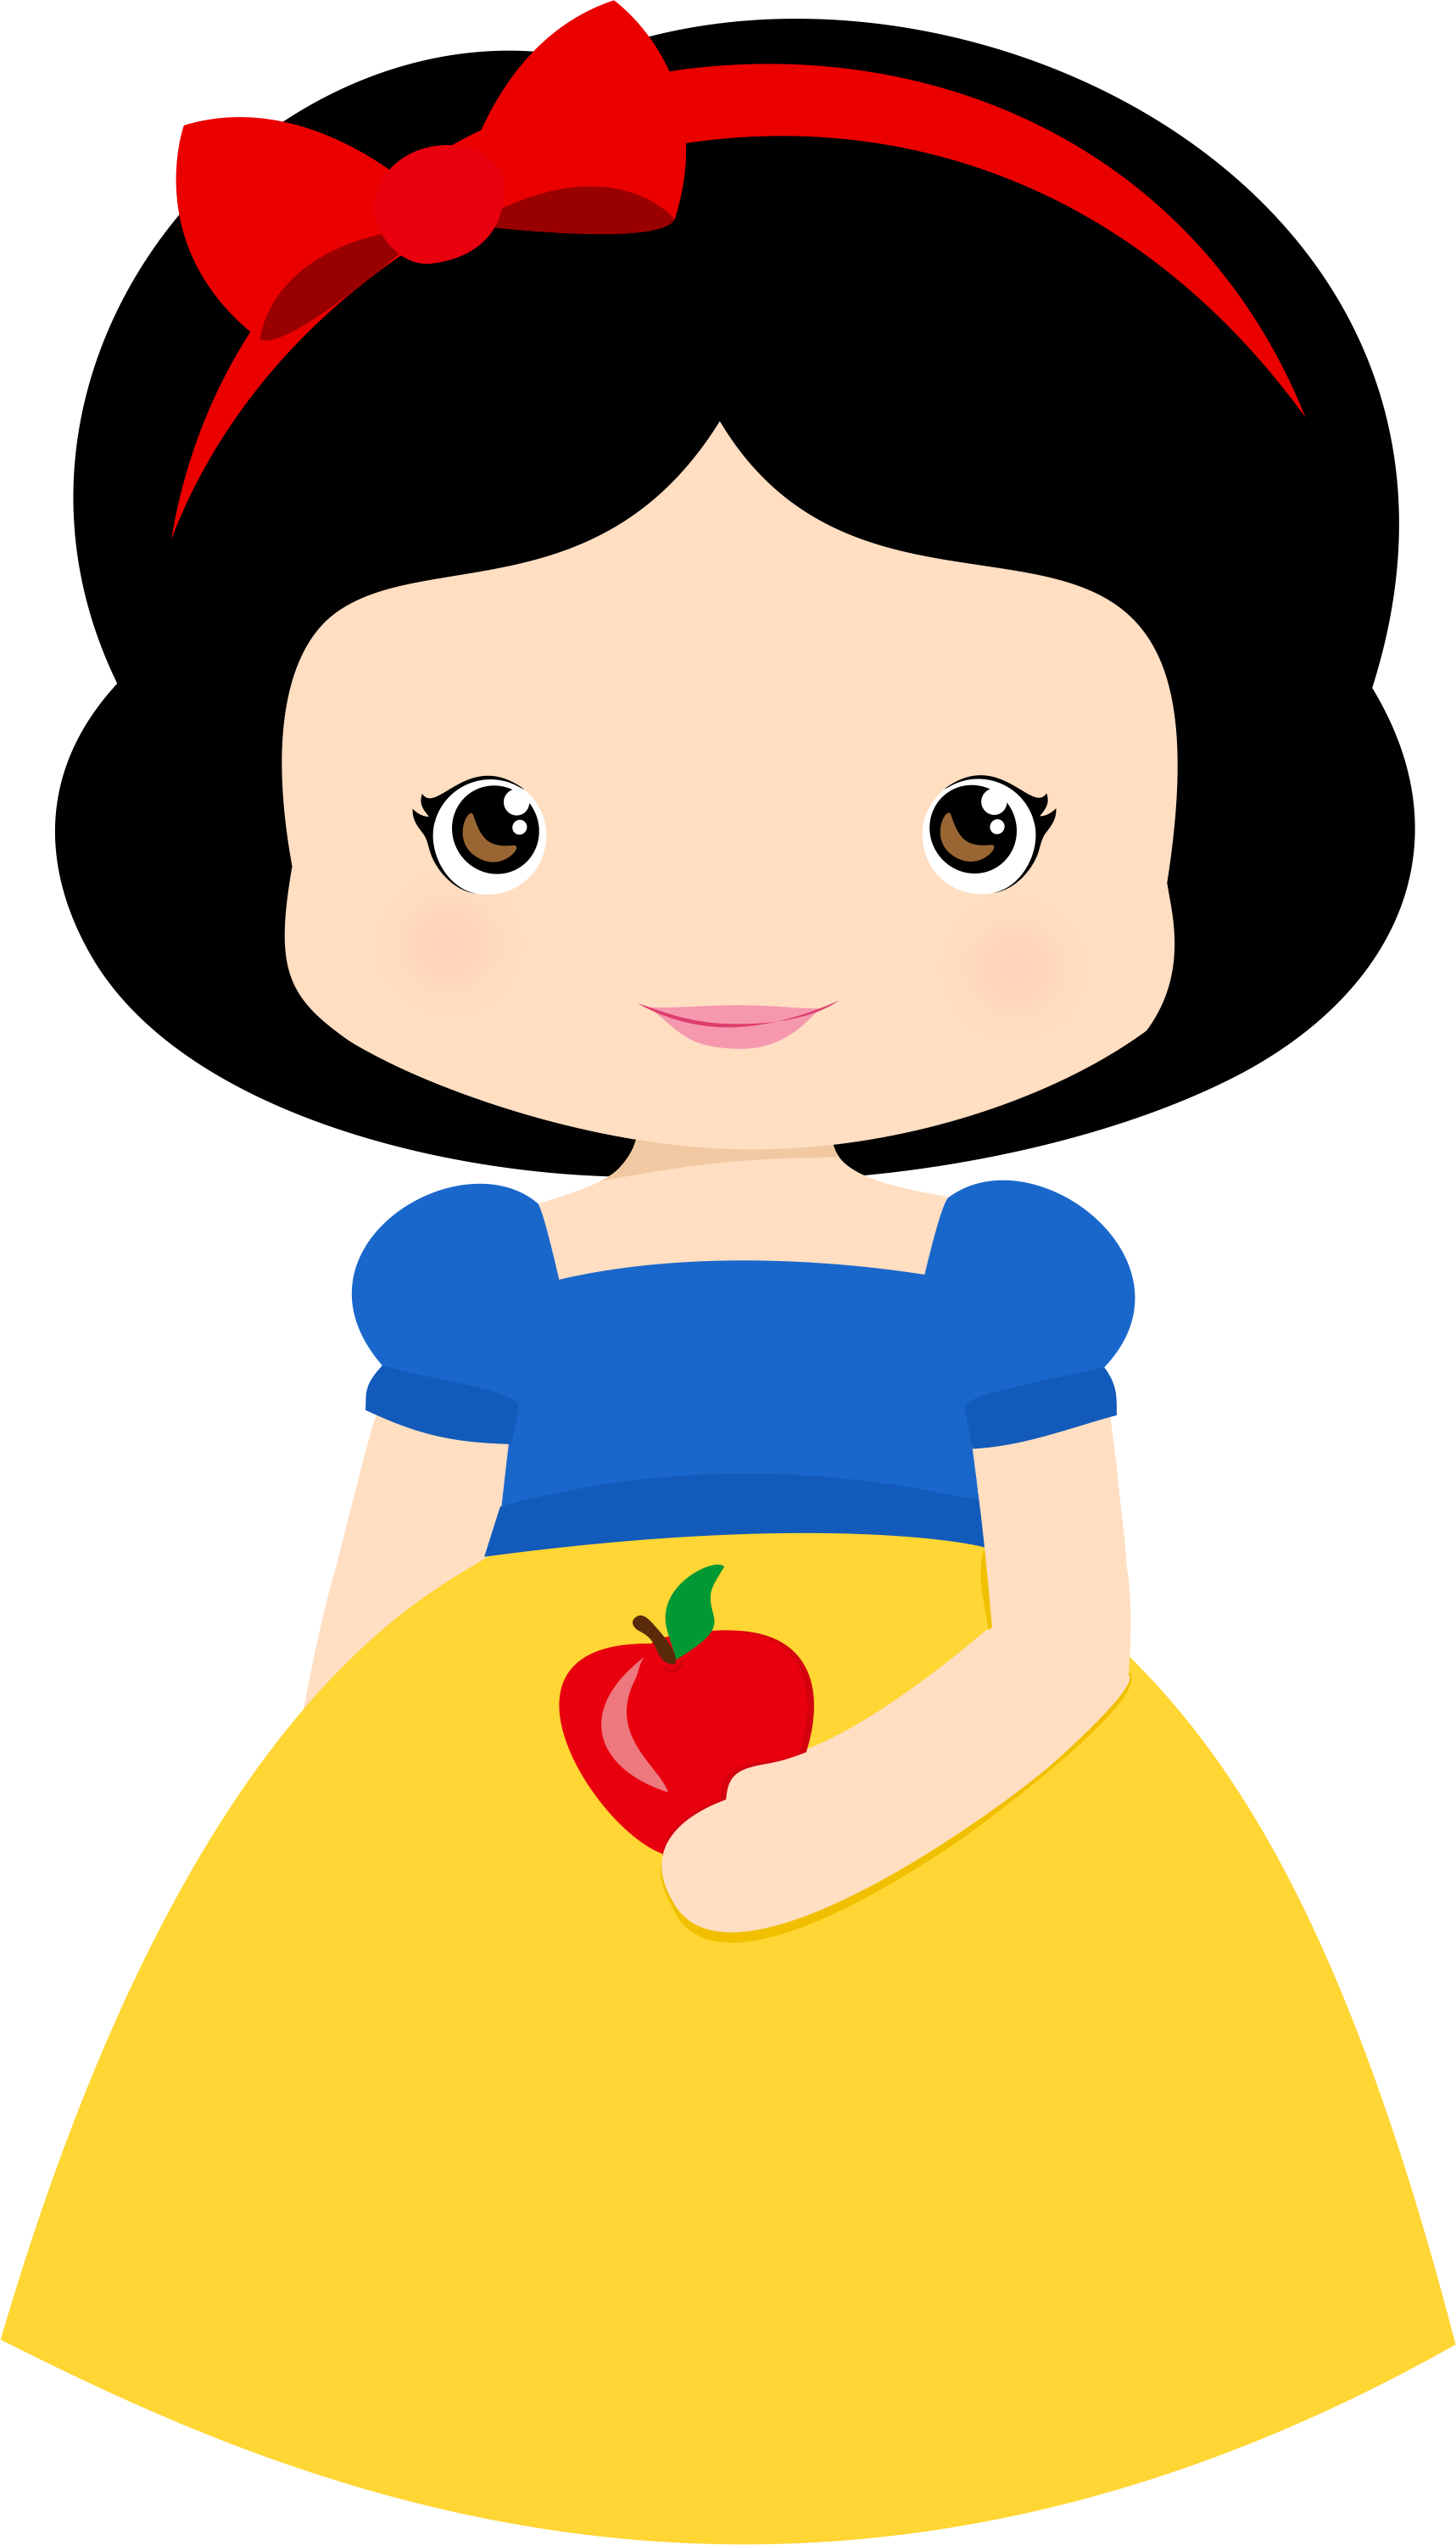 Snow White Images, Cute Princess, Disney Princess, - Branca De Neve Pequena Clipart (515x900), Png Download